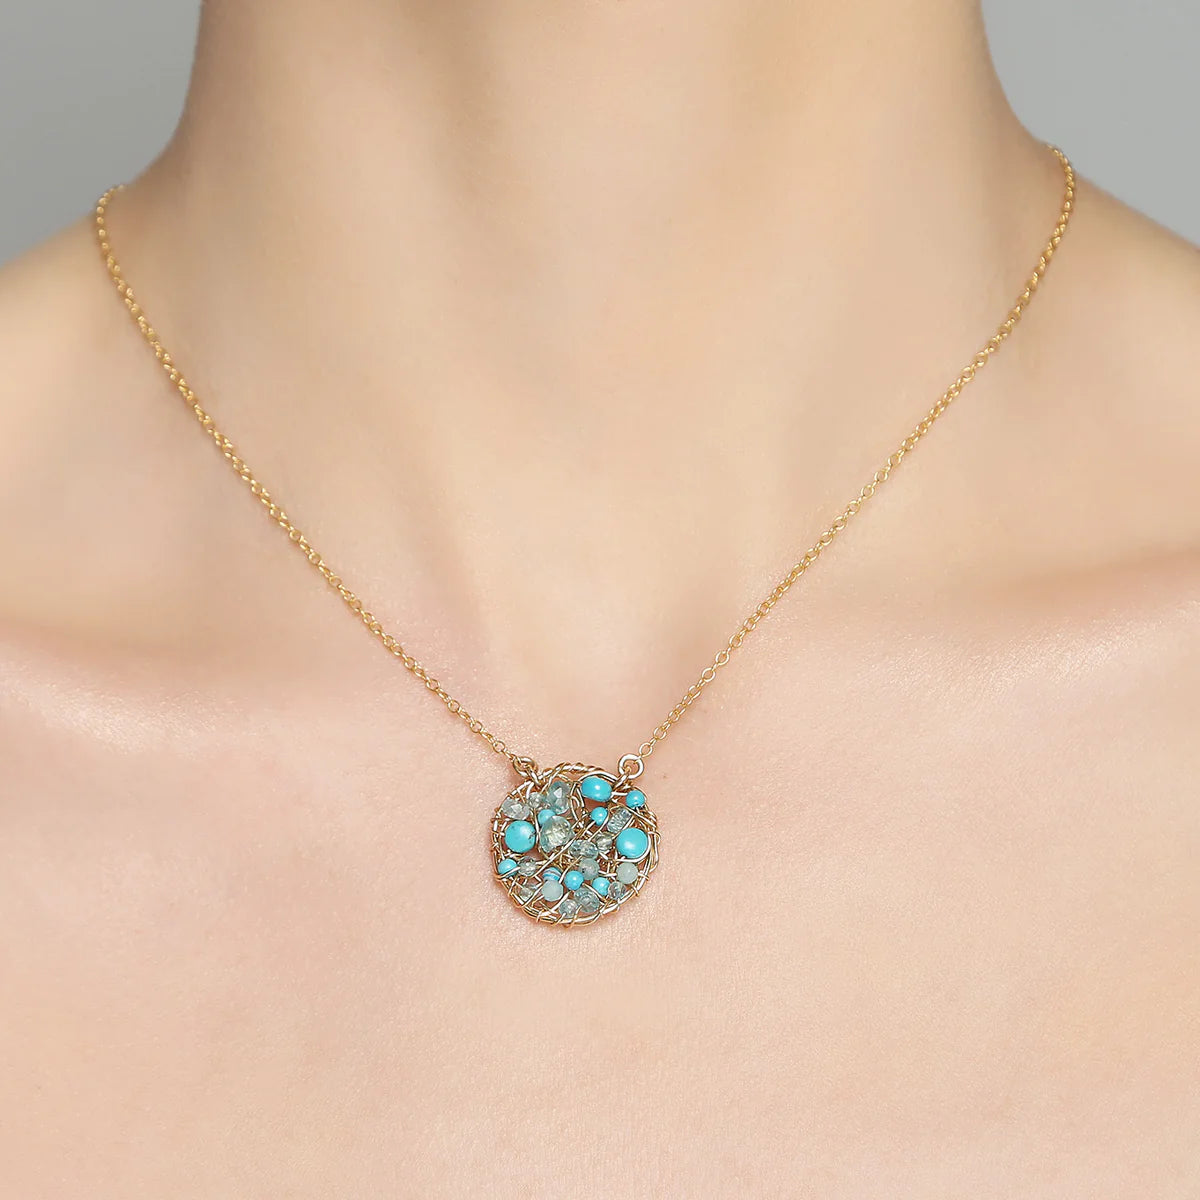 Aura Necklace #2 (20mm) -Turquoise, Aquamarine, Apatite, Howlite